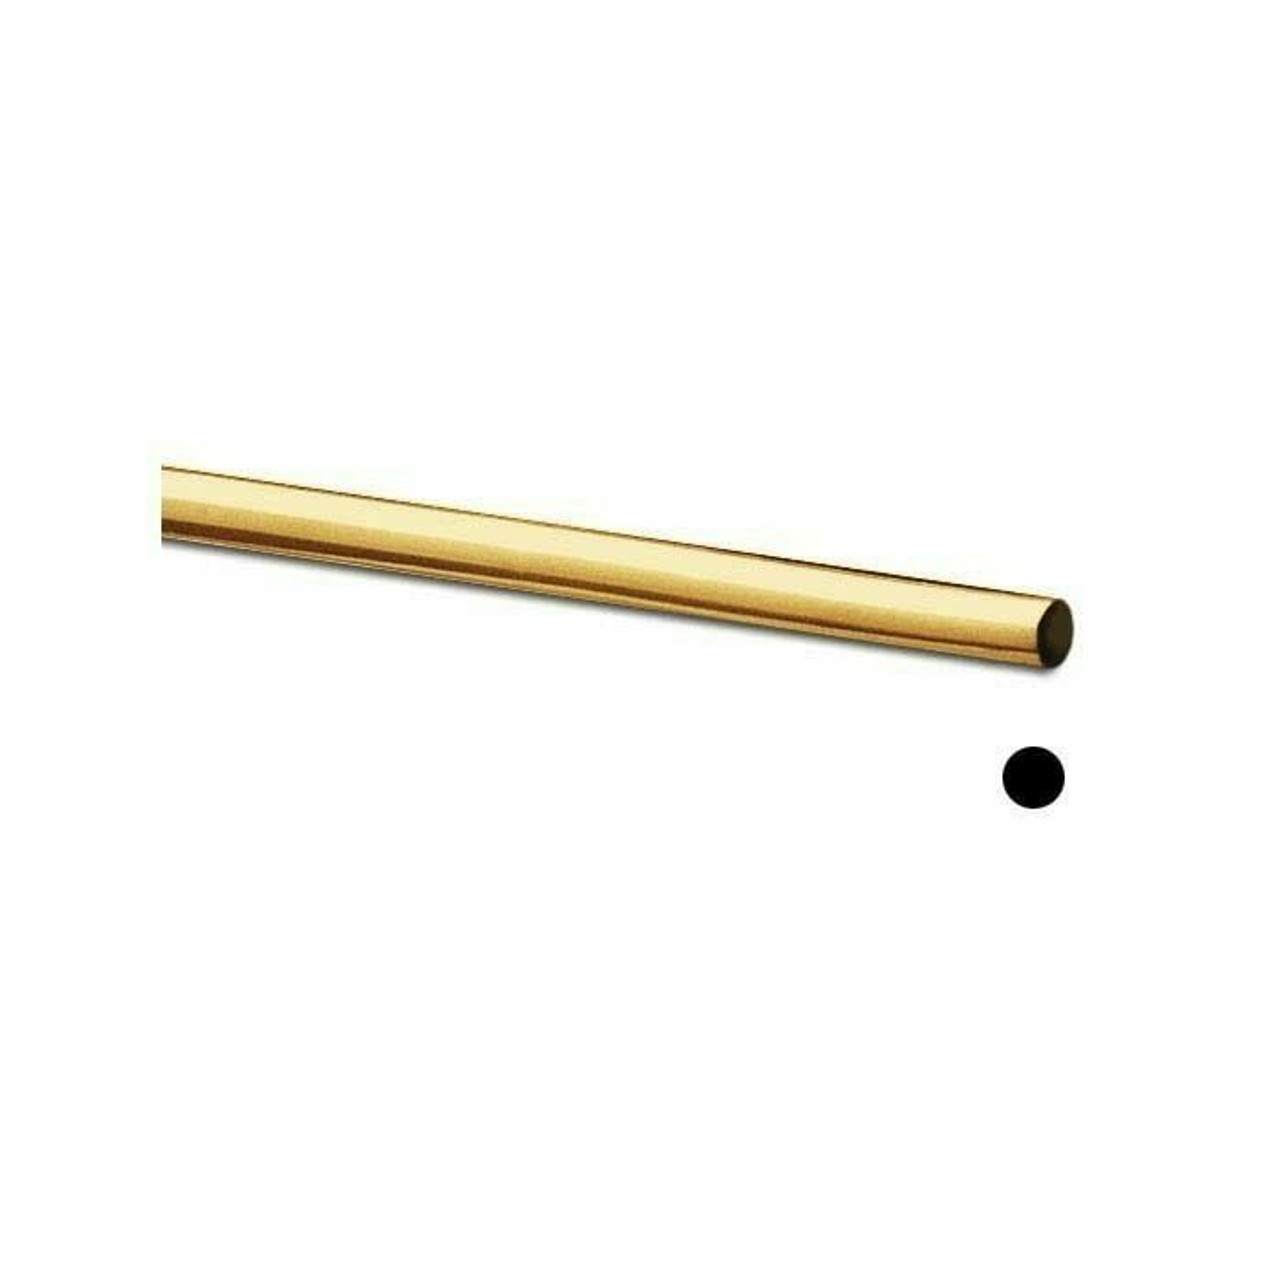 Jeweler's Brass Round Wire, 4-Oz. Spool, 20-Ga., Dead Soft, 130503